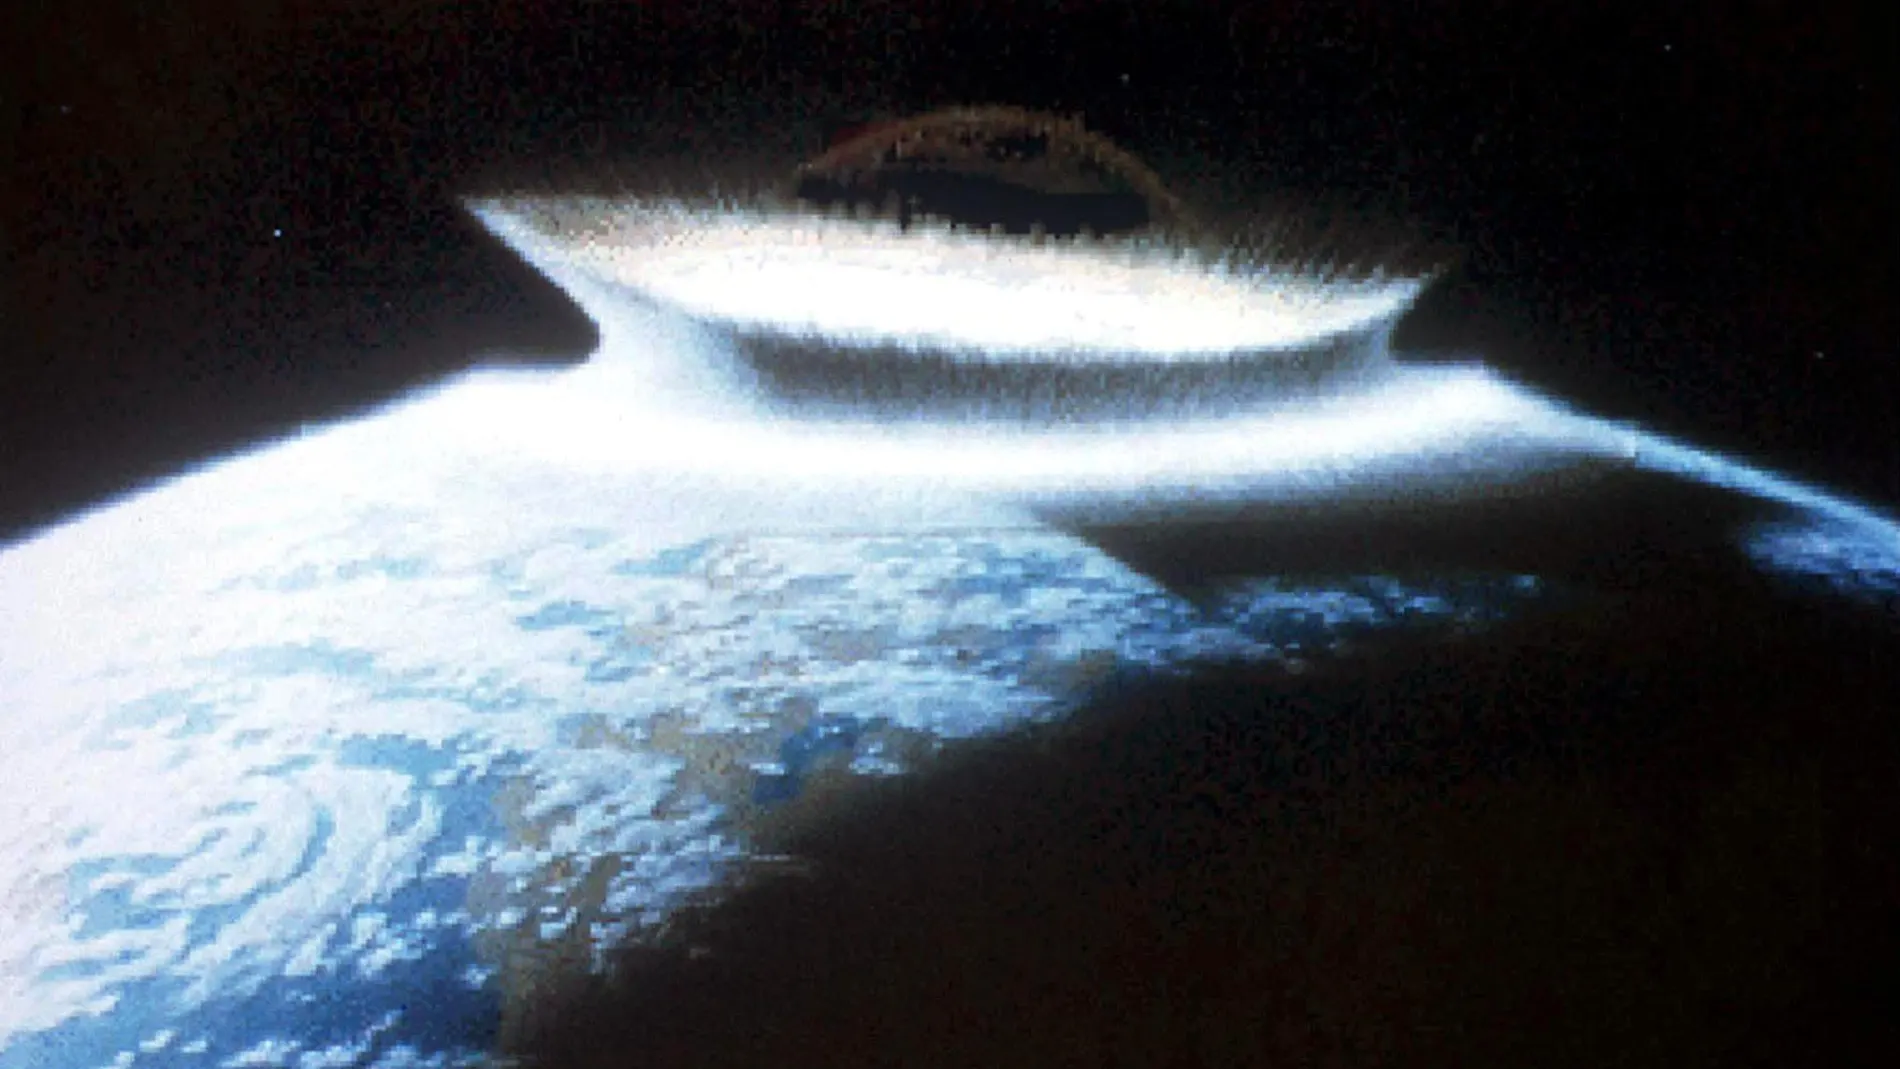 Representación de cómo sería el impacto de un asteroide contra la Tierra